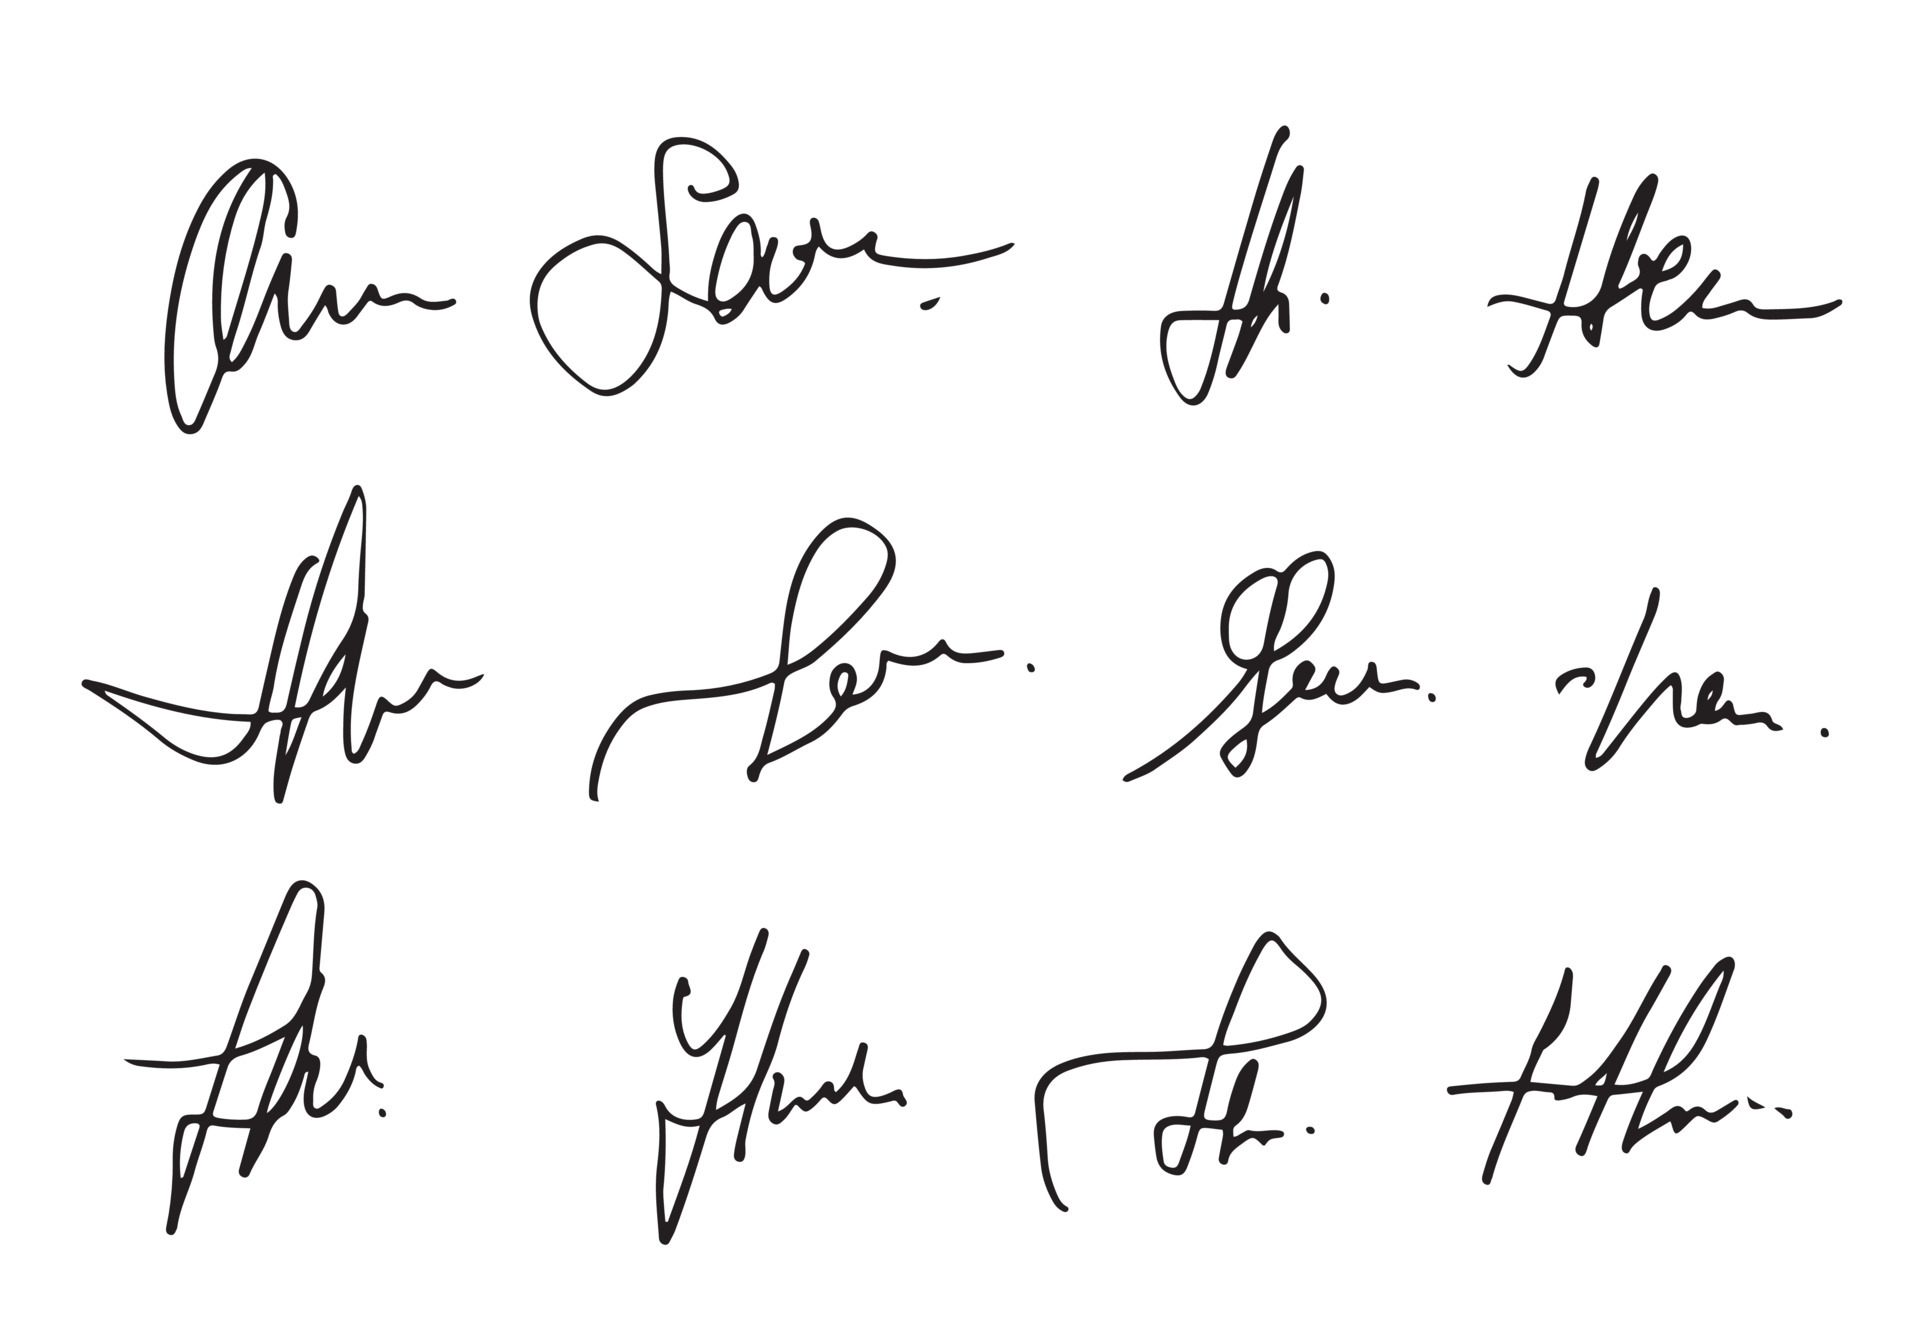 7030105-signature-manuelle-pour-documents-sur-fond-blanc-lettrage-calligraphie-dessine-a-la-main-illustrationle-eps10-gratuit-vectoriel